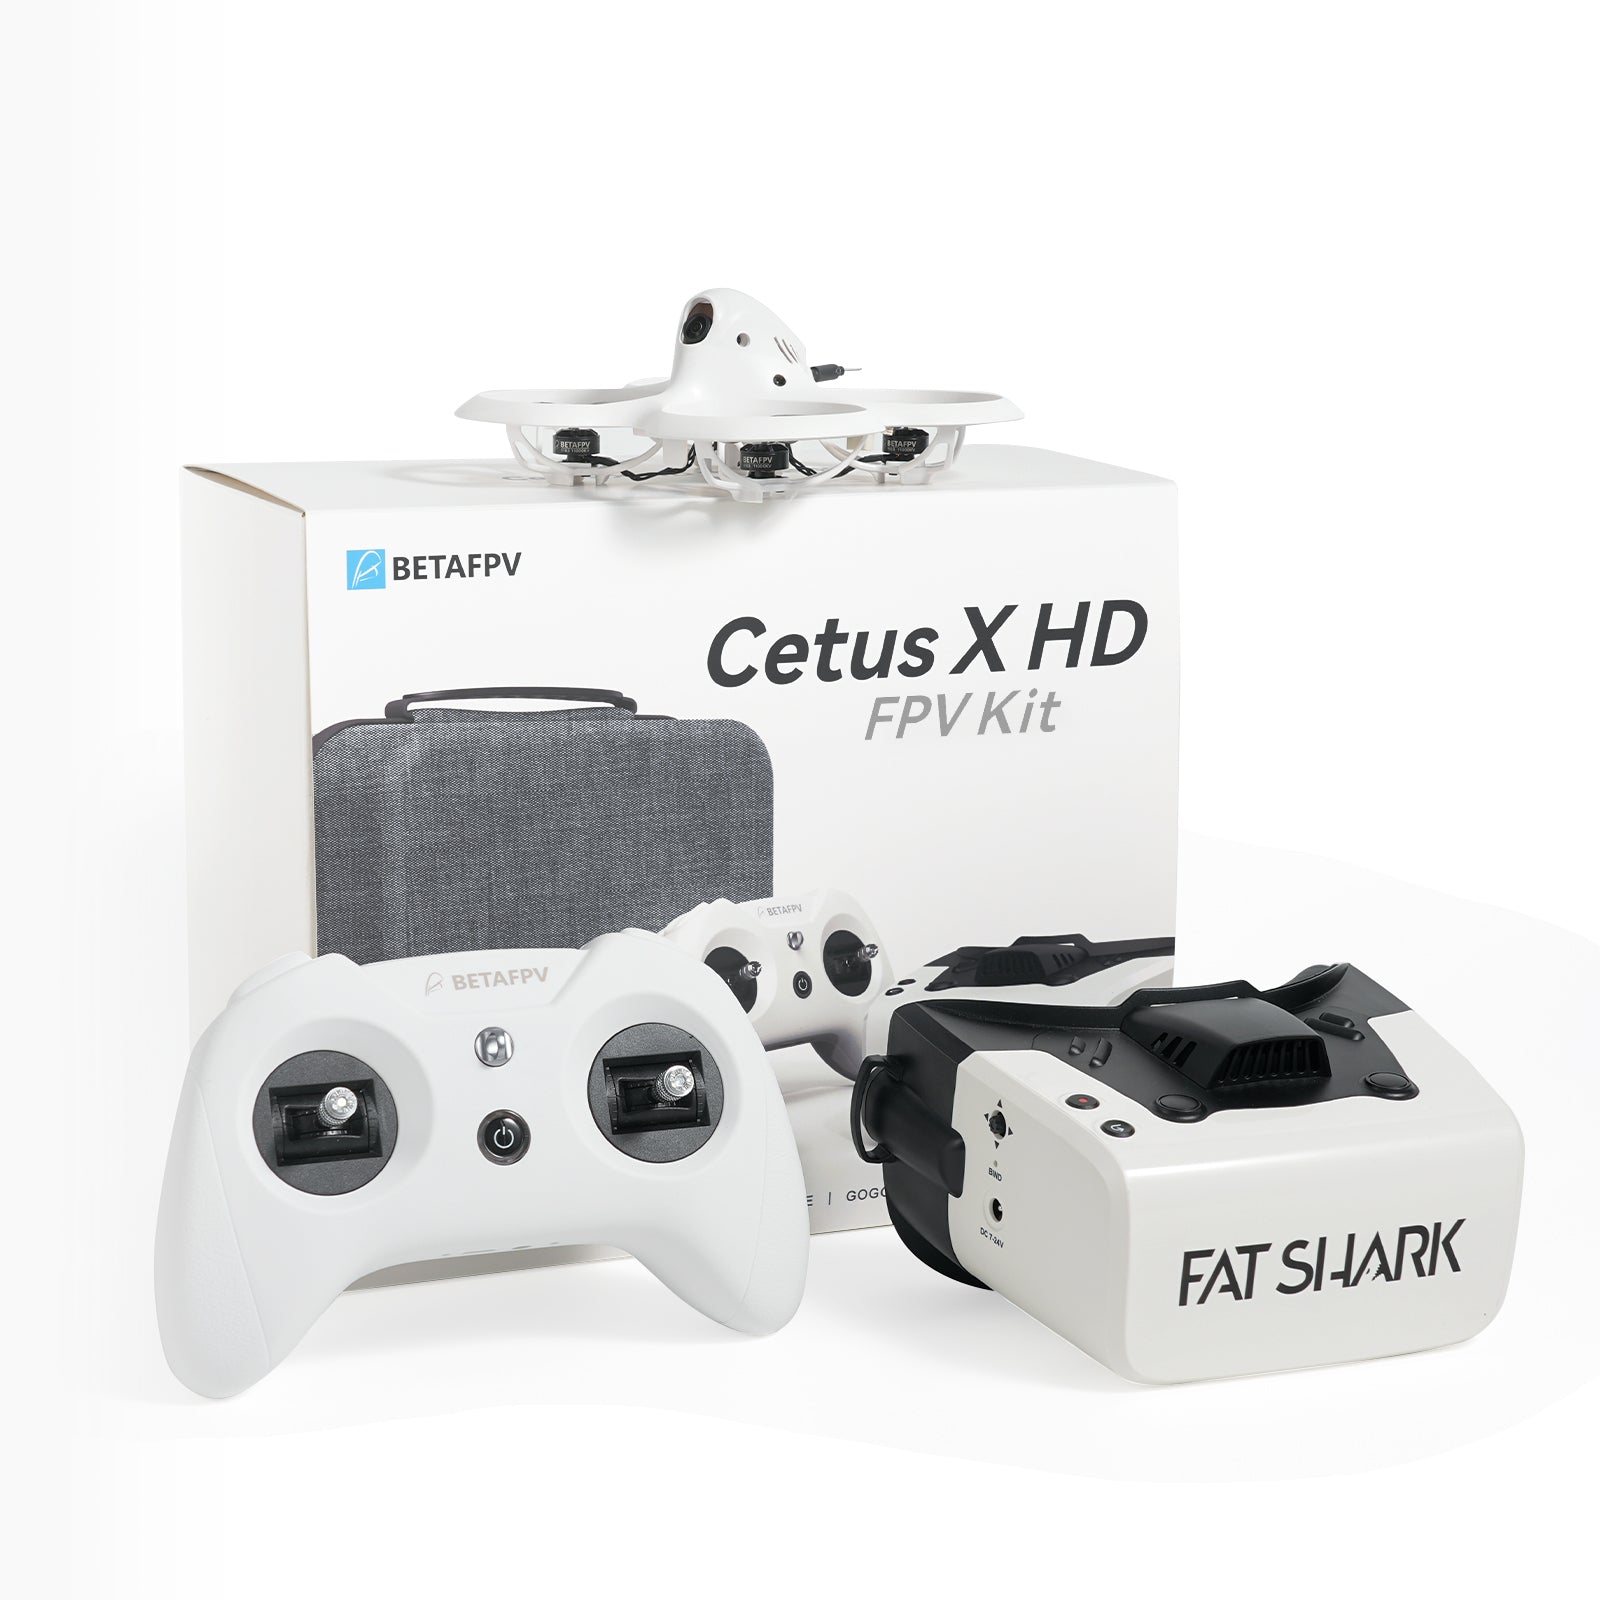 Cetus X HD FPV Kit